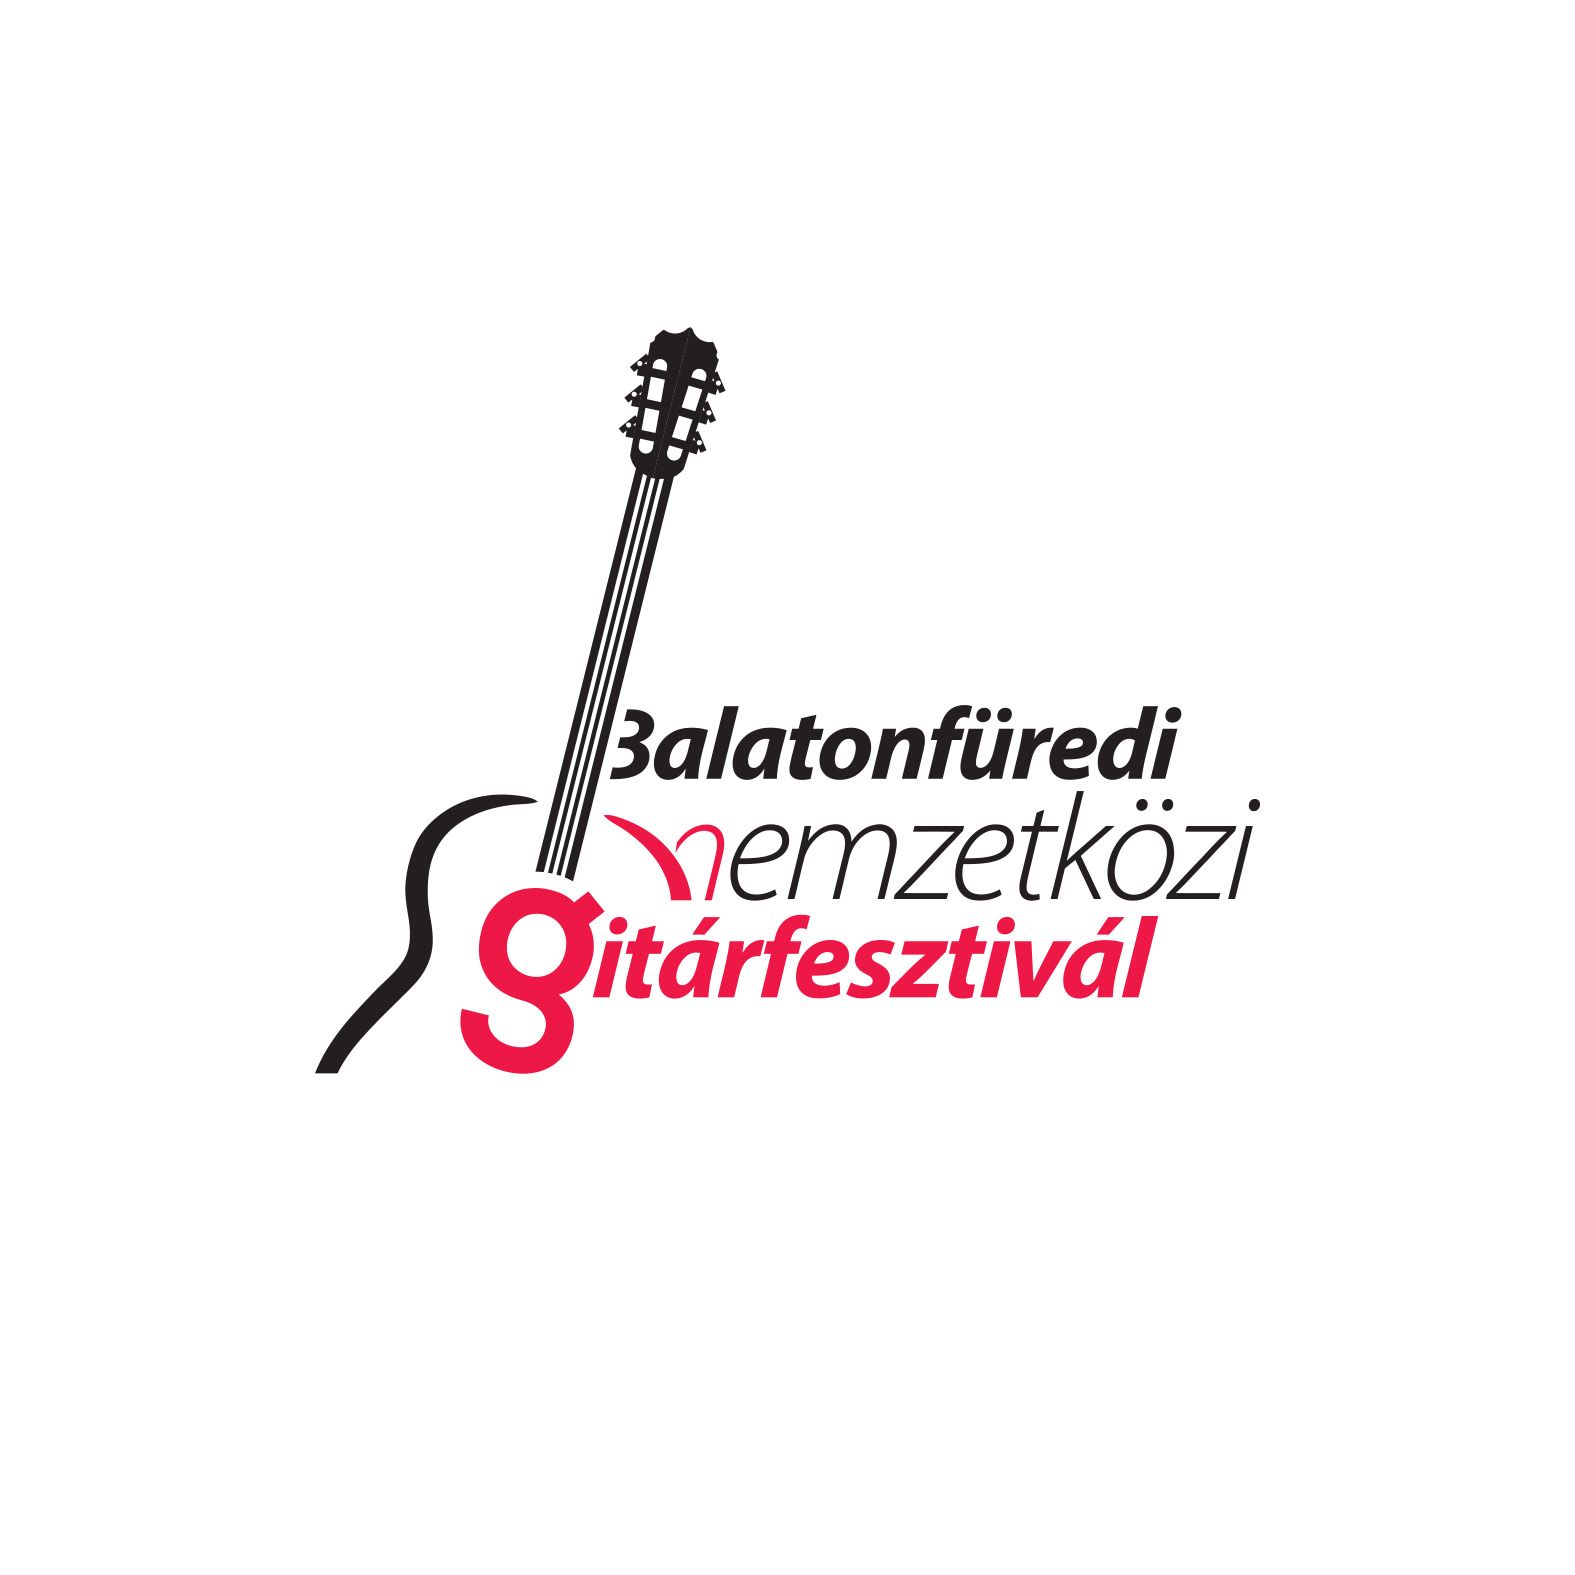 Balatonfüredi Nemzetközi Gitárfesztivál